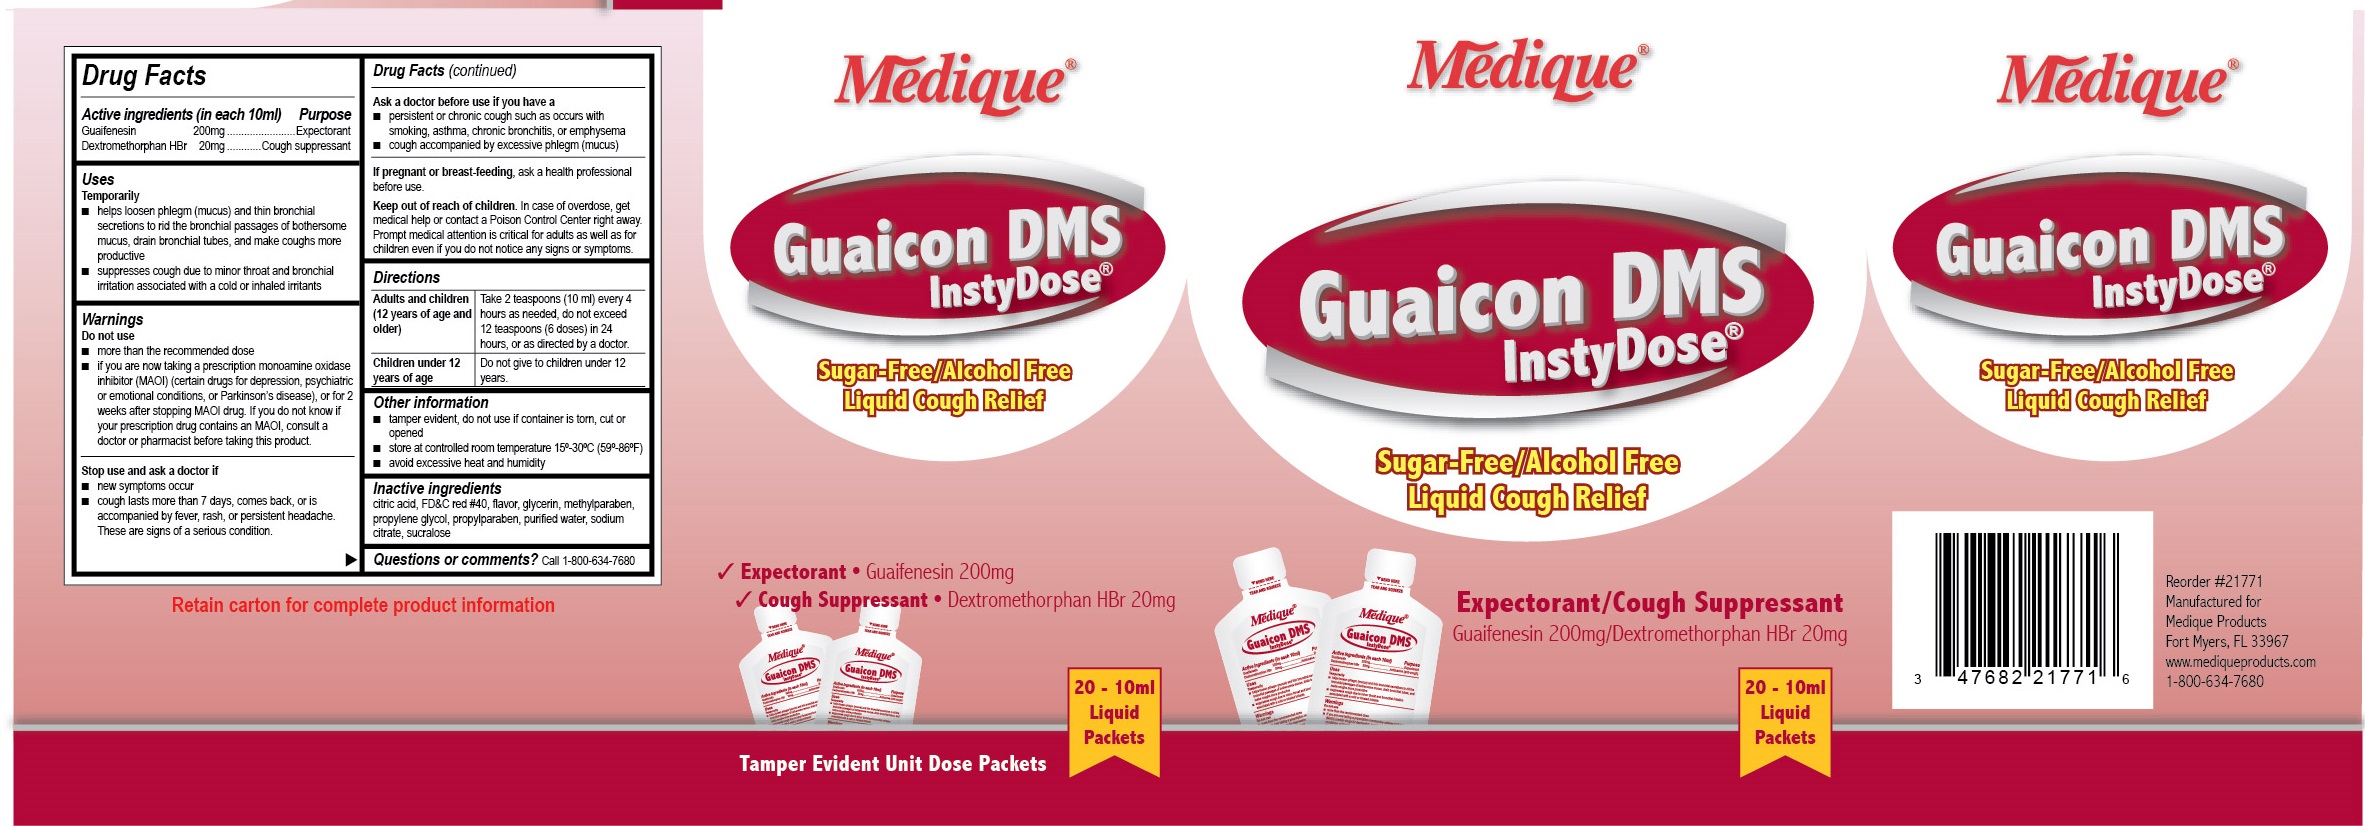 217R Guaicon DMS InstyDose Label